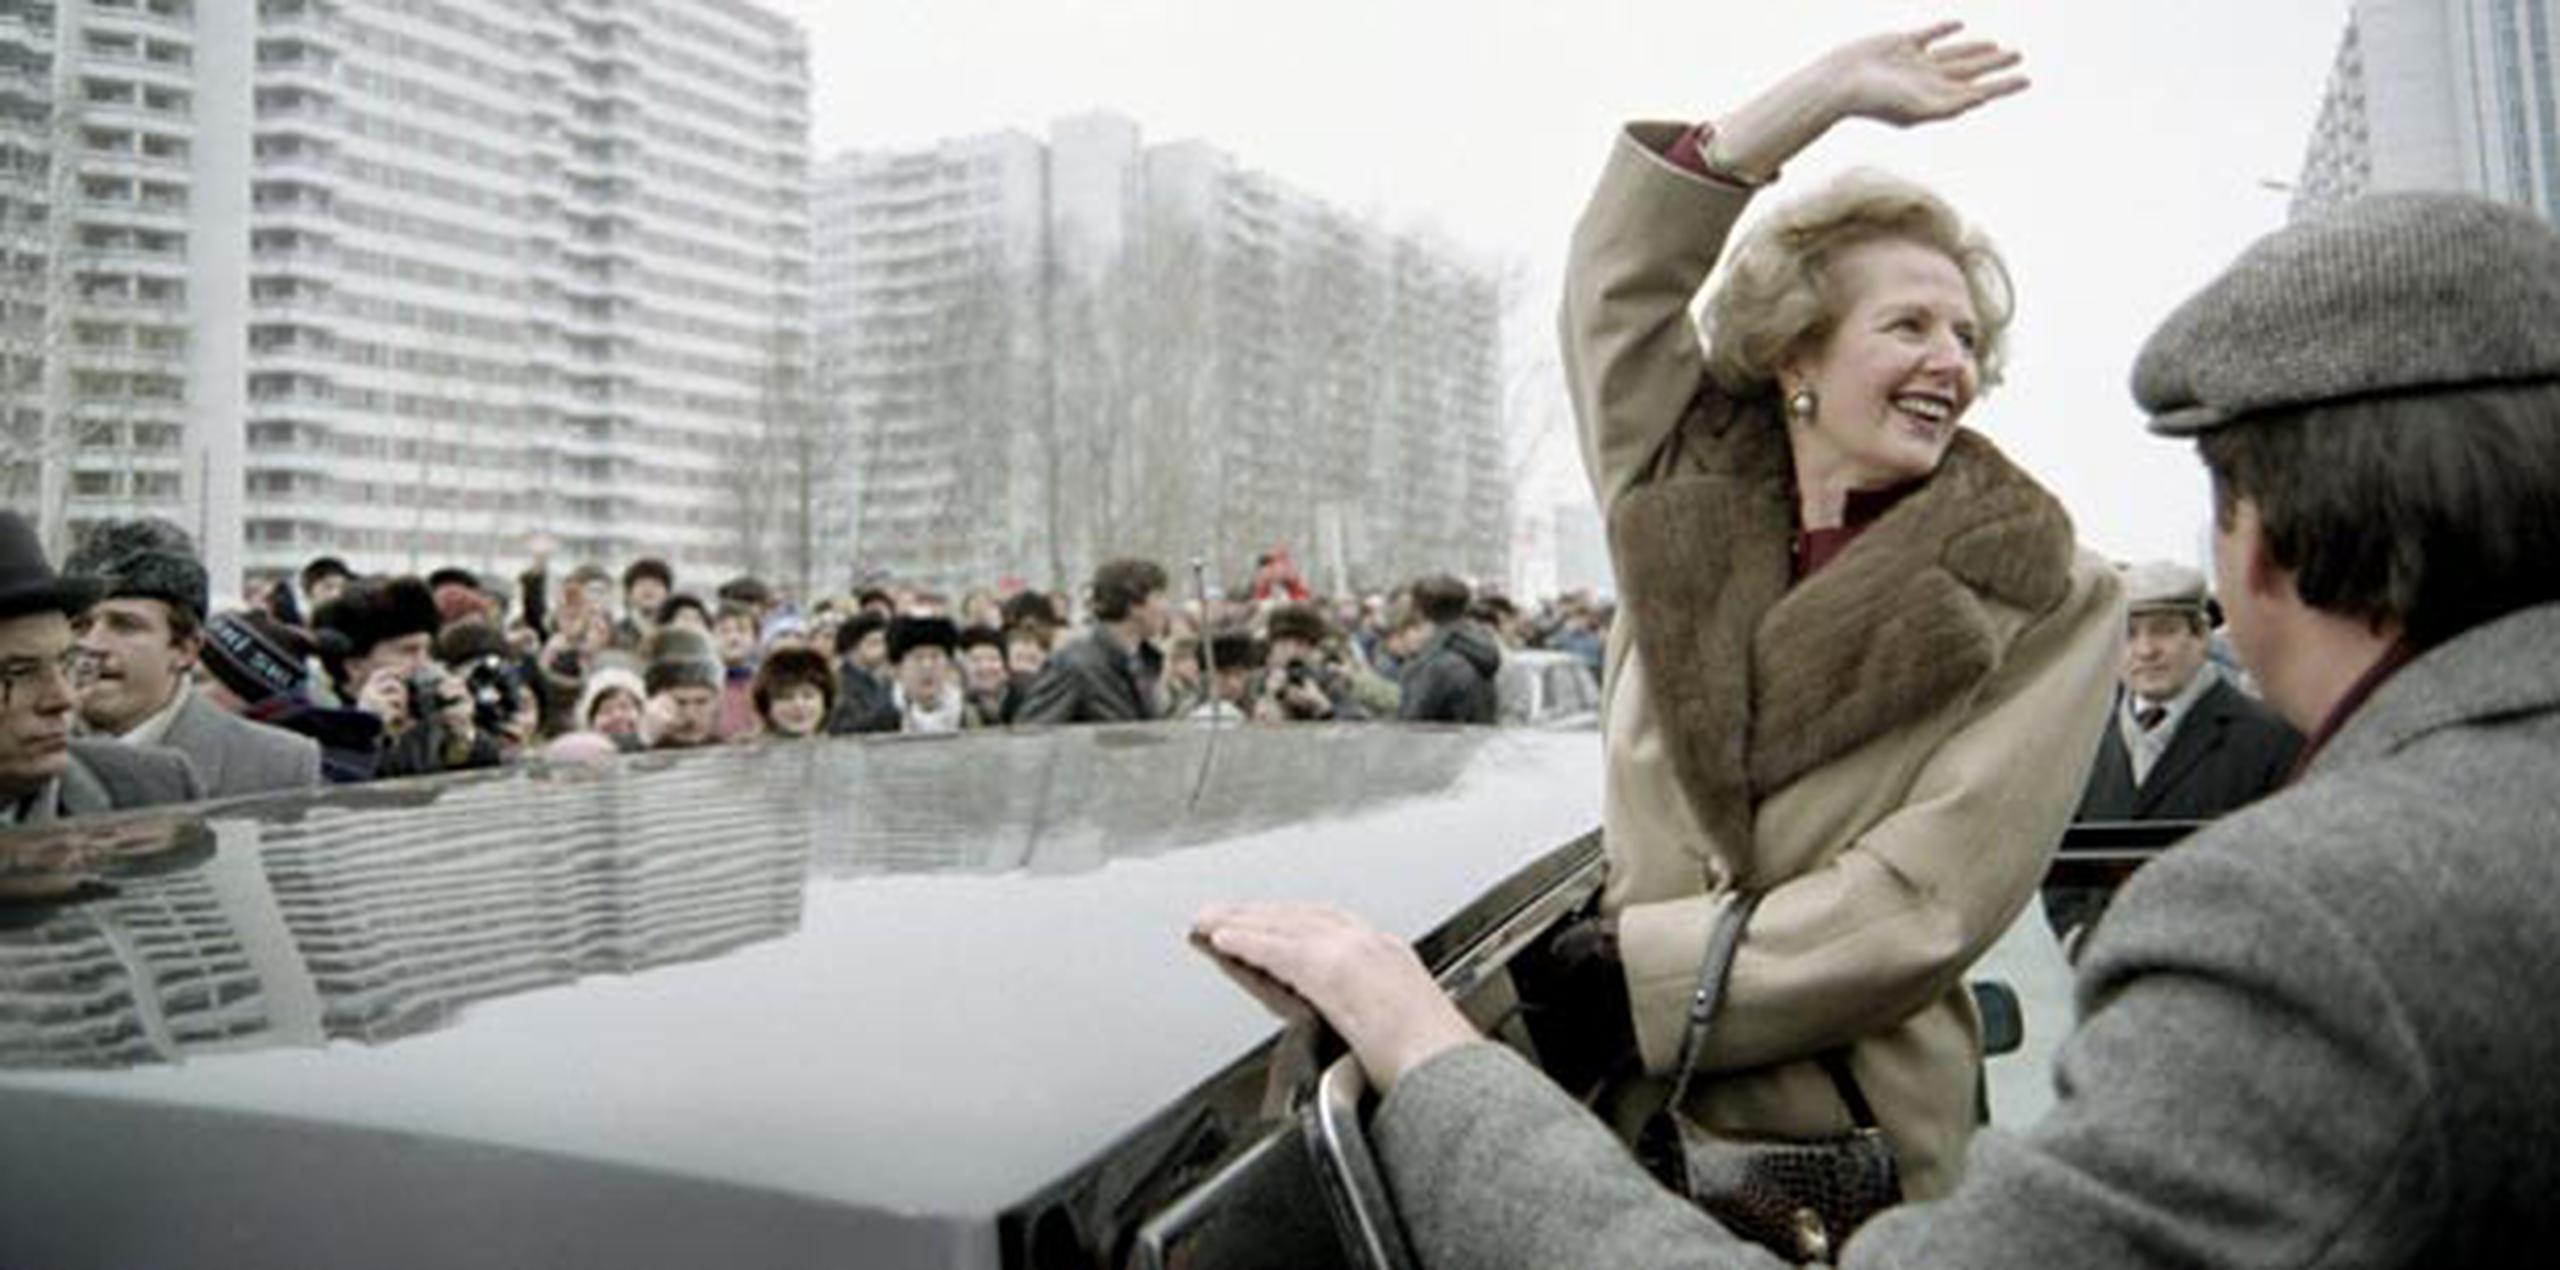 No todo sobre Margaret Thatcher es positivo, el presidente del partido irlandés Sinn Fein, Gerry Adams, la acusó de "hacer mucho daño a los pueblos británico e irlandés", pues llevó a cabo políticas que "devastaron a la clase trabajadora".  (AFP/Archivo/Daniel Janin)